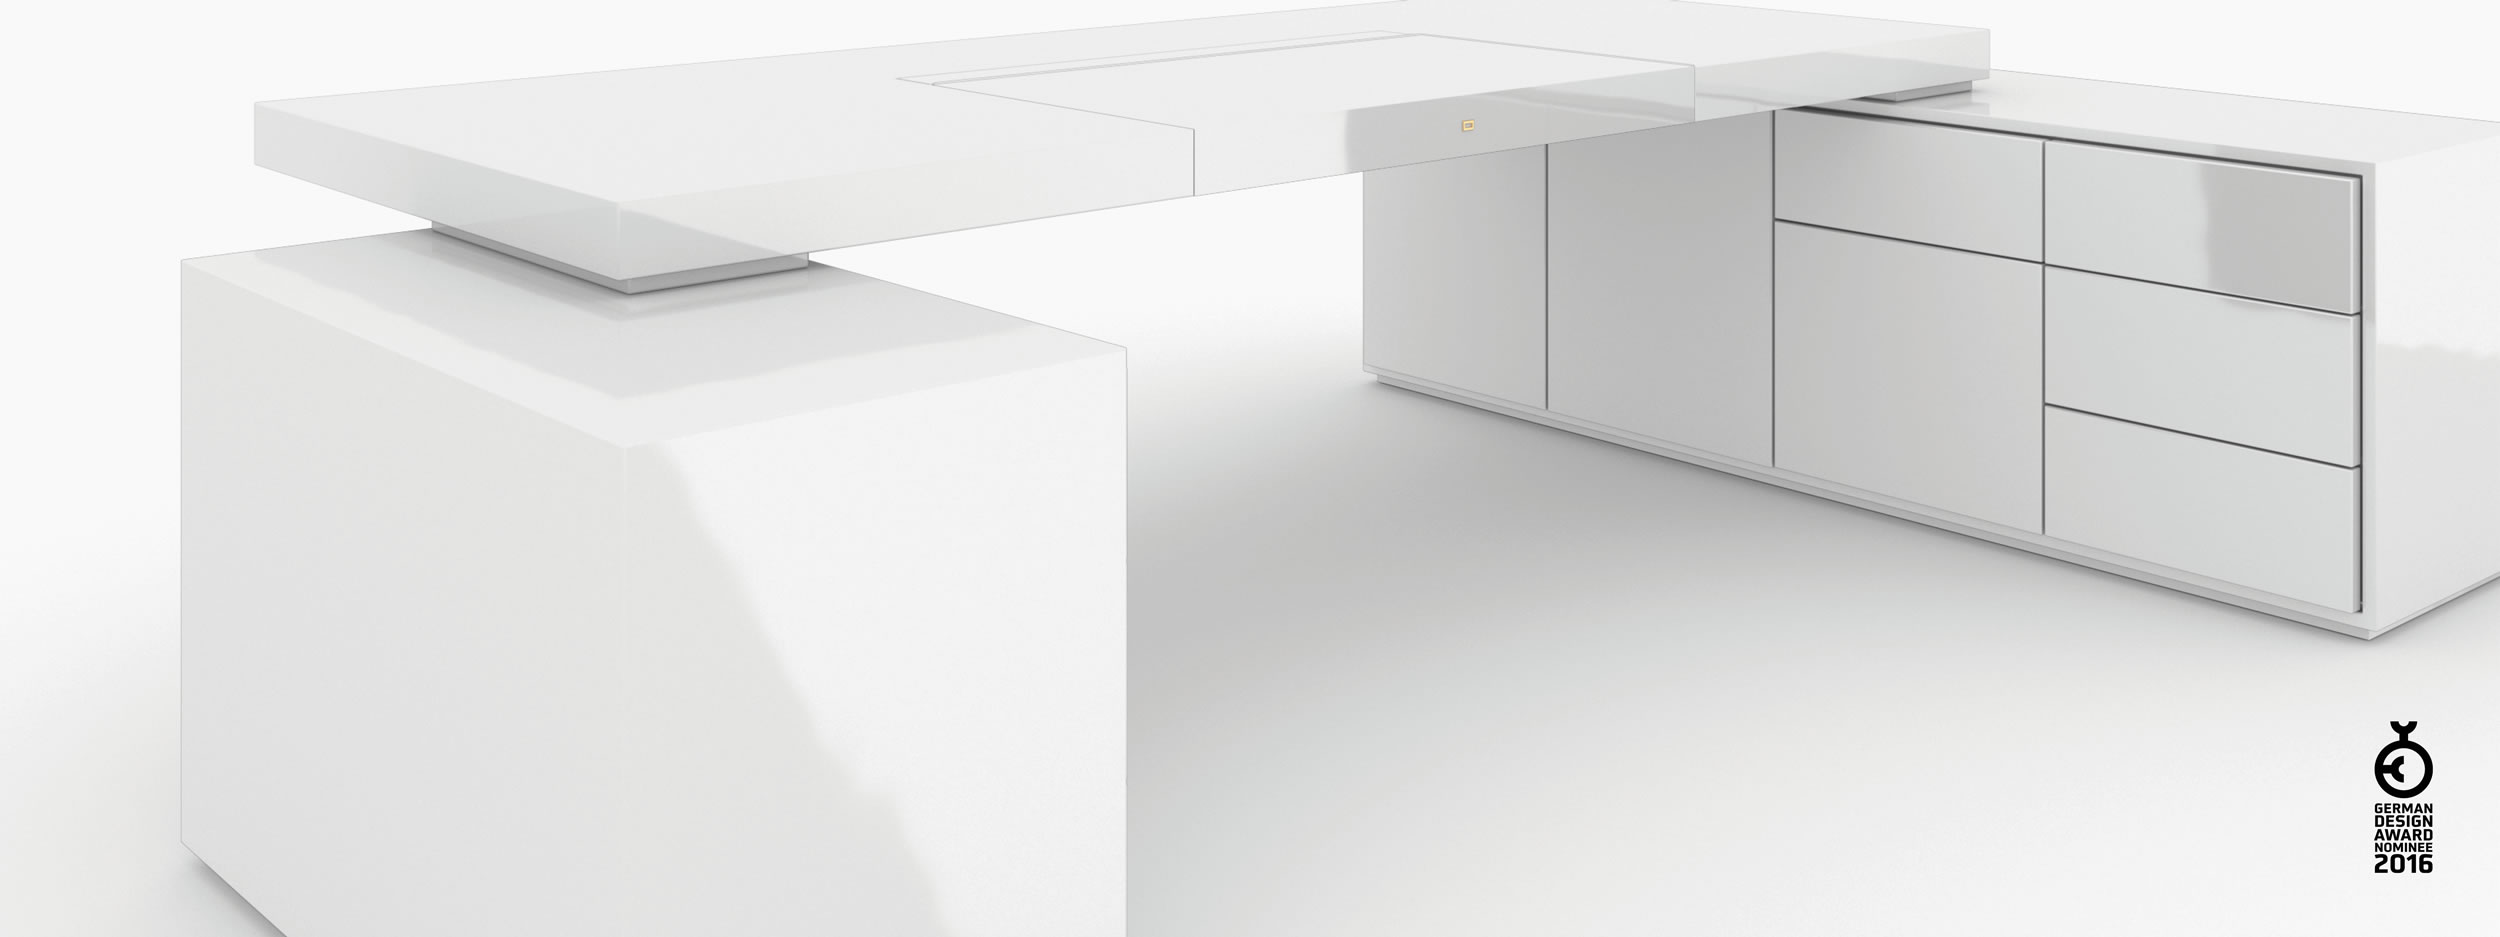 Schreibtisch scheiben und quader weiss bed room Chefzimmer minimalist design Schreibtische FS 95 FELIX SCHWAKE RECHTECK